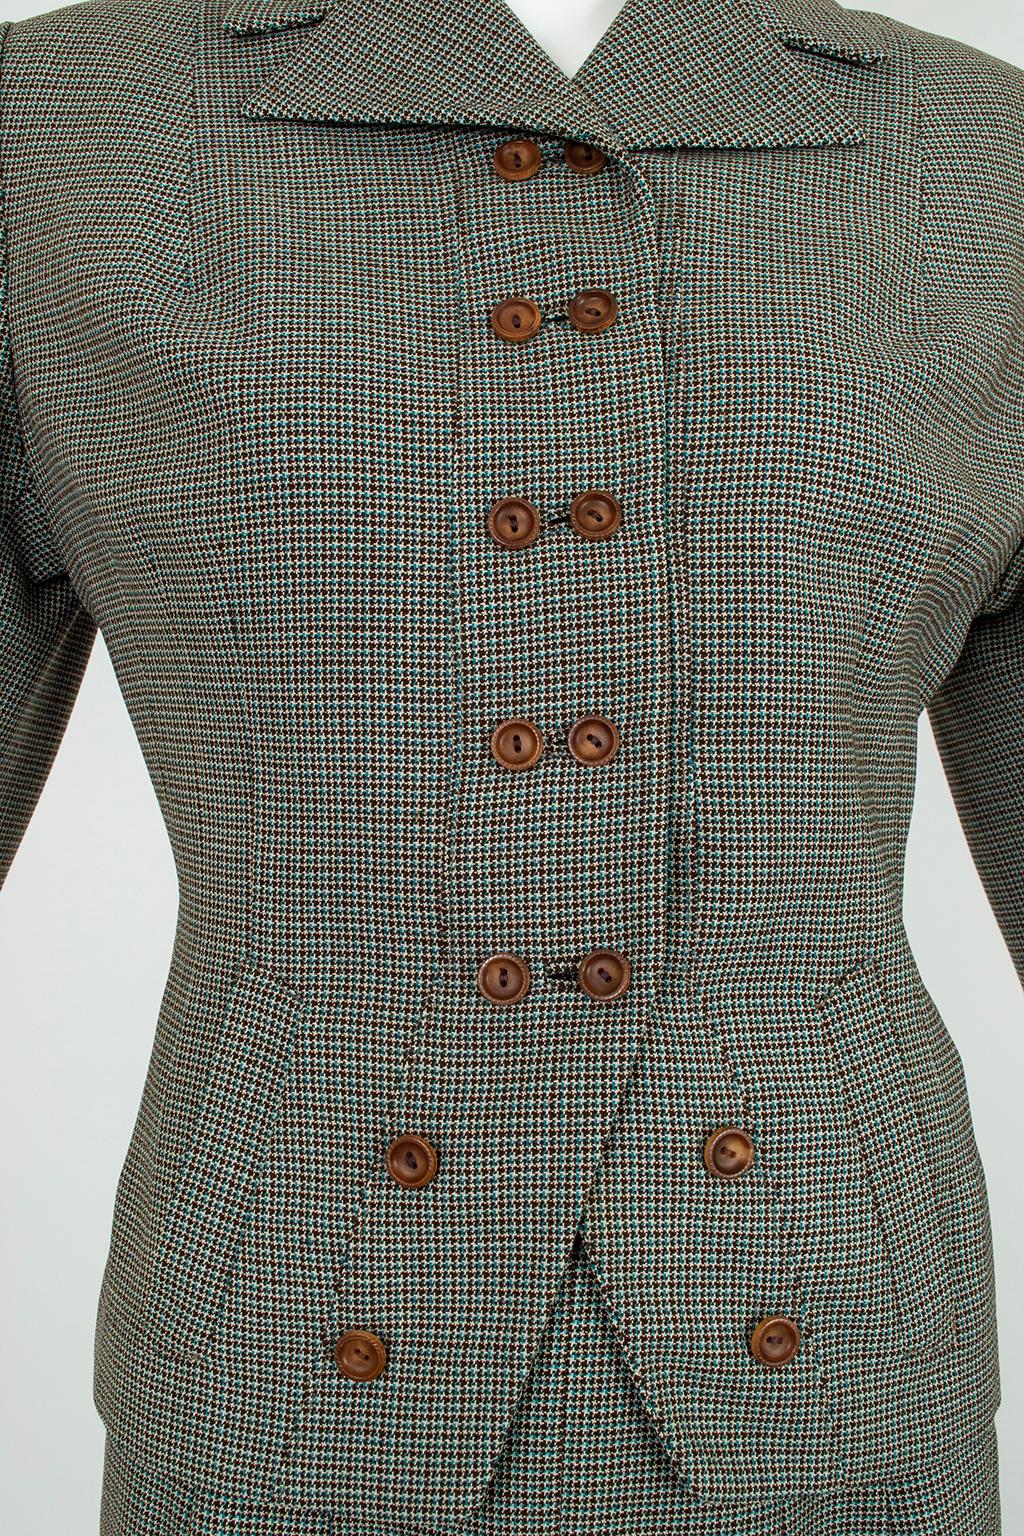 Costume français bleu et brun en pied-de-poule avec boutons fantaisie - S-M, années 1940 Pour femmes en vente